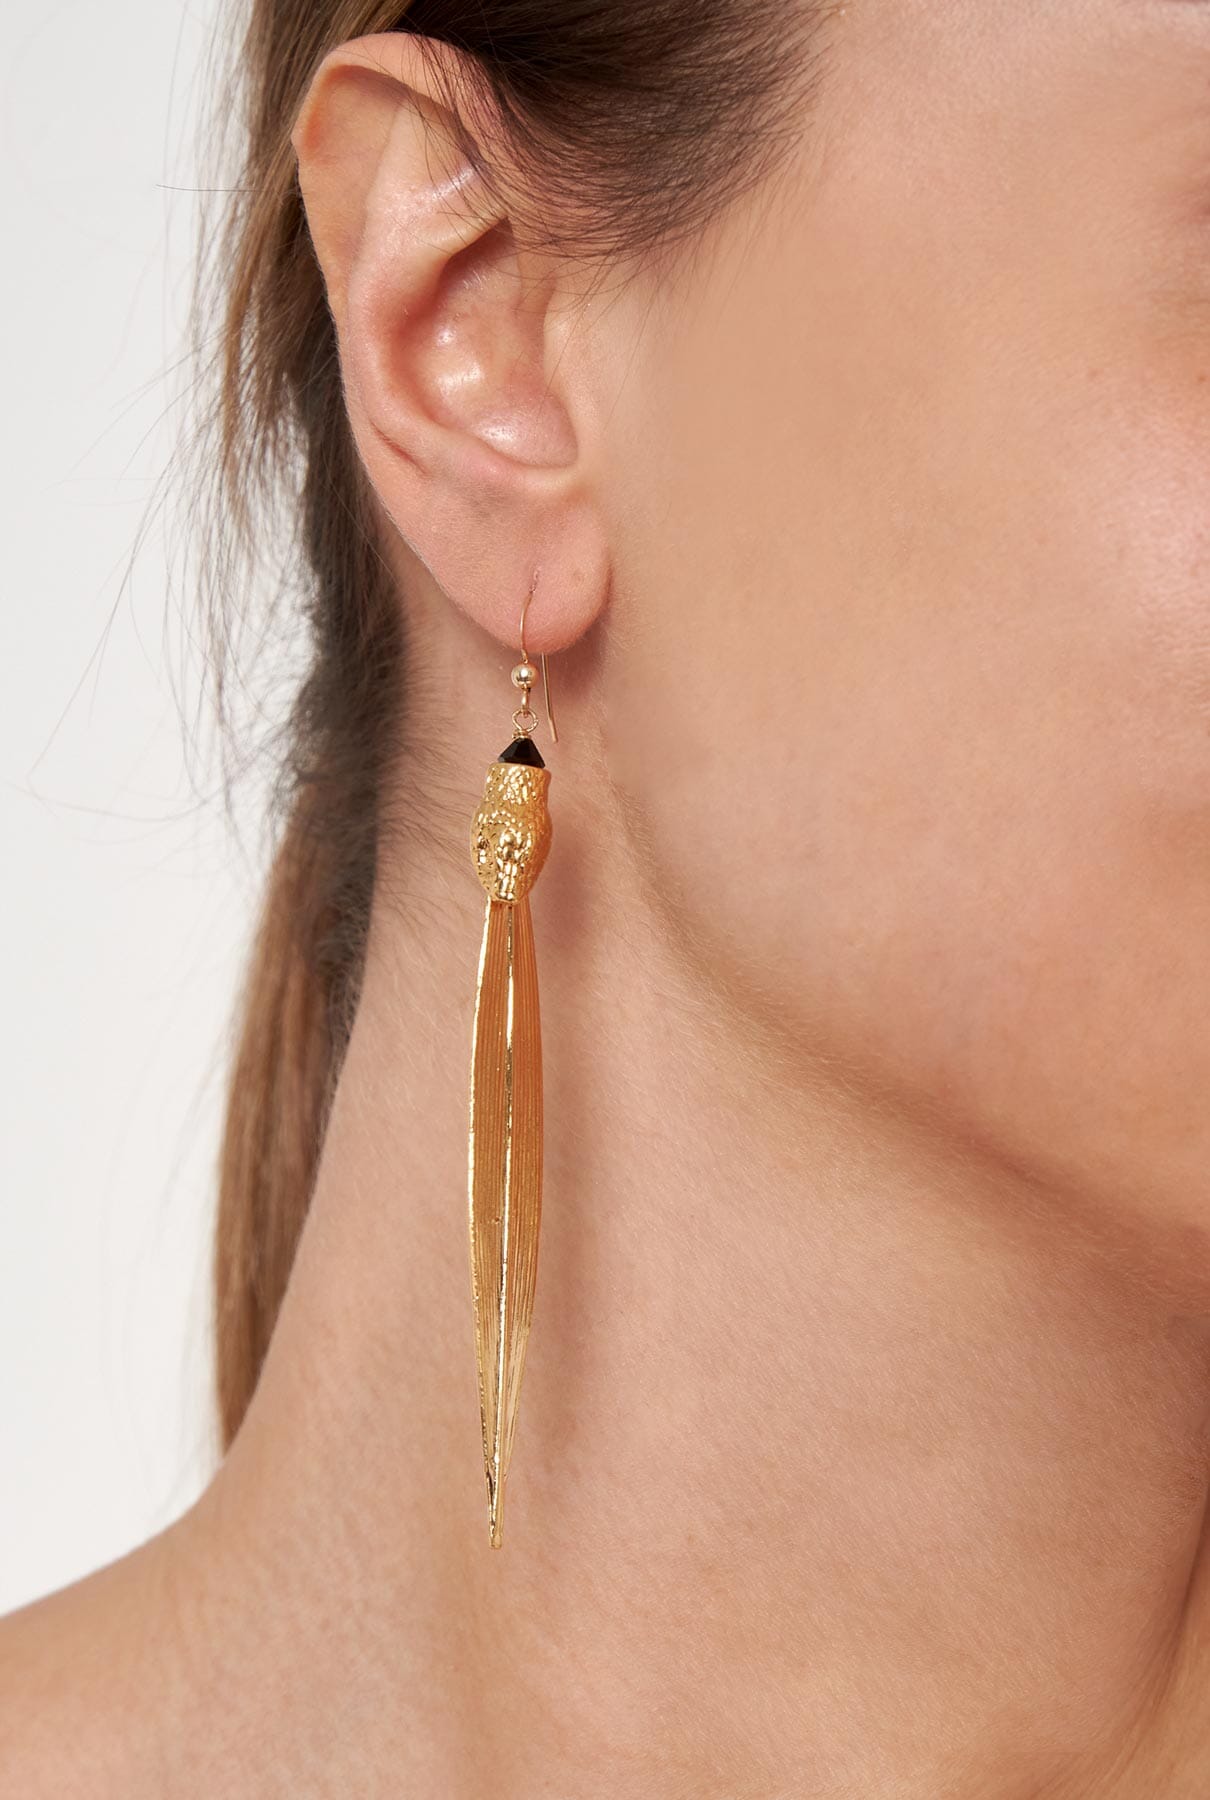 Adan earrings Earrings La Morenita 